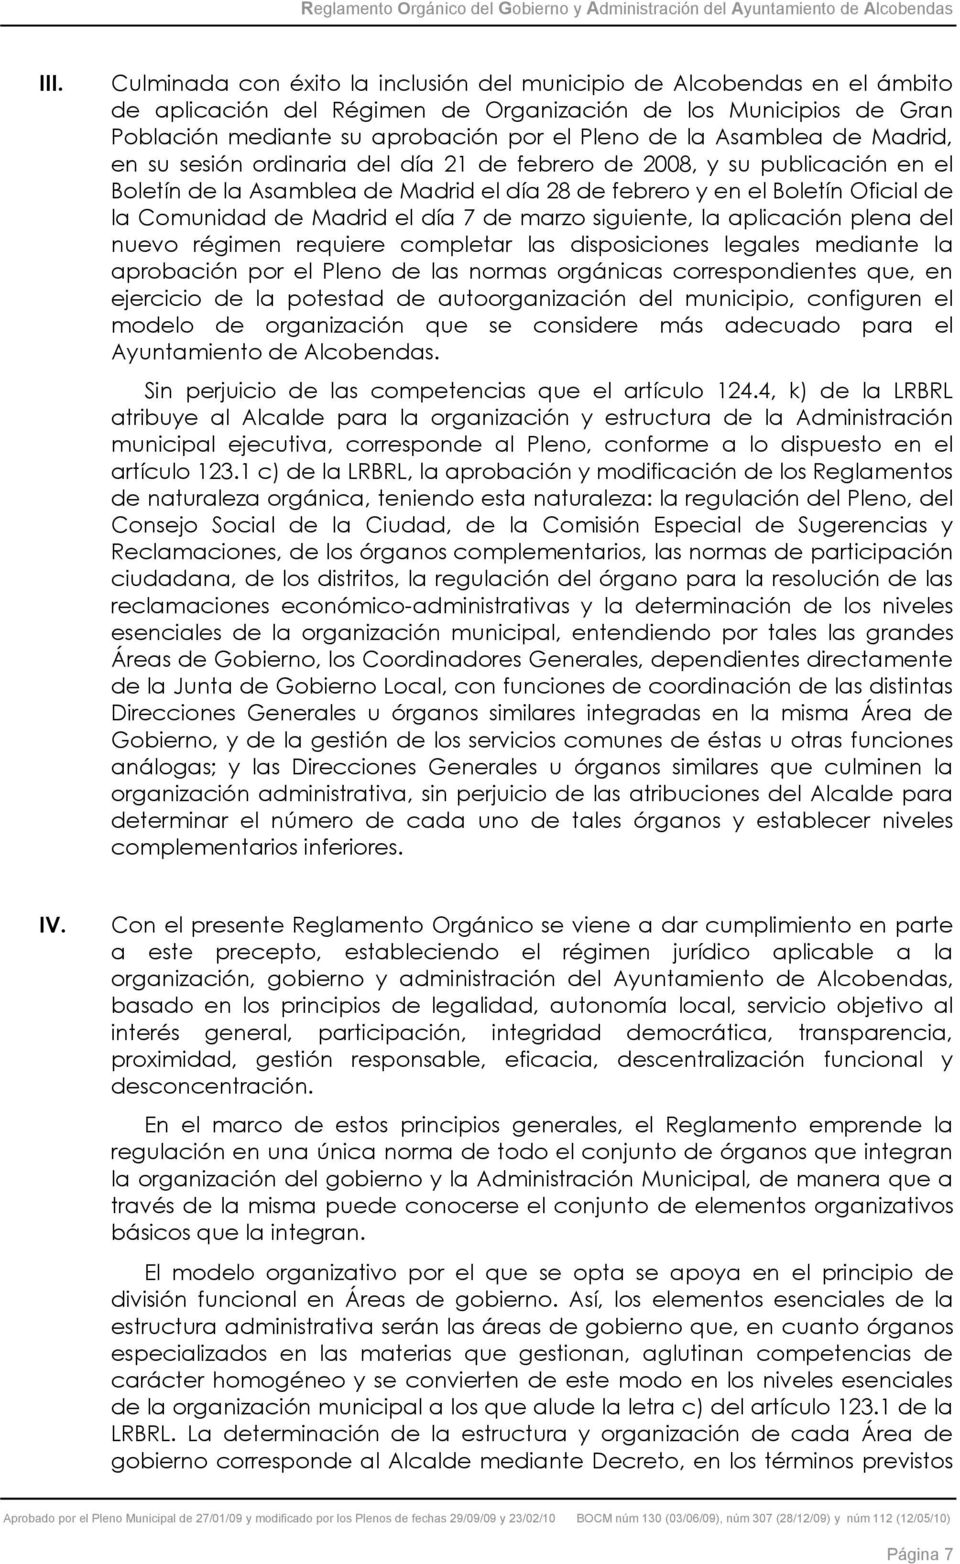 Madrid el día 7 de marzo siguiente, la aplicación plena del nuevo régimen requiere completar las disposiciones legales mediante la aprobación por el Pleno de las normas orgánicas correspondientes